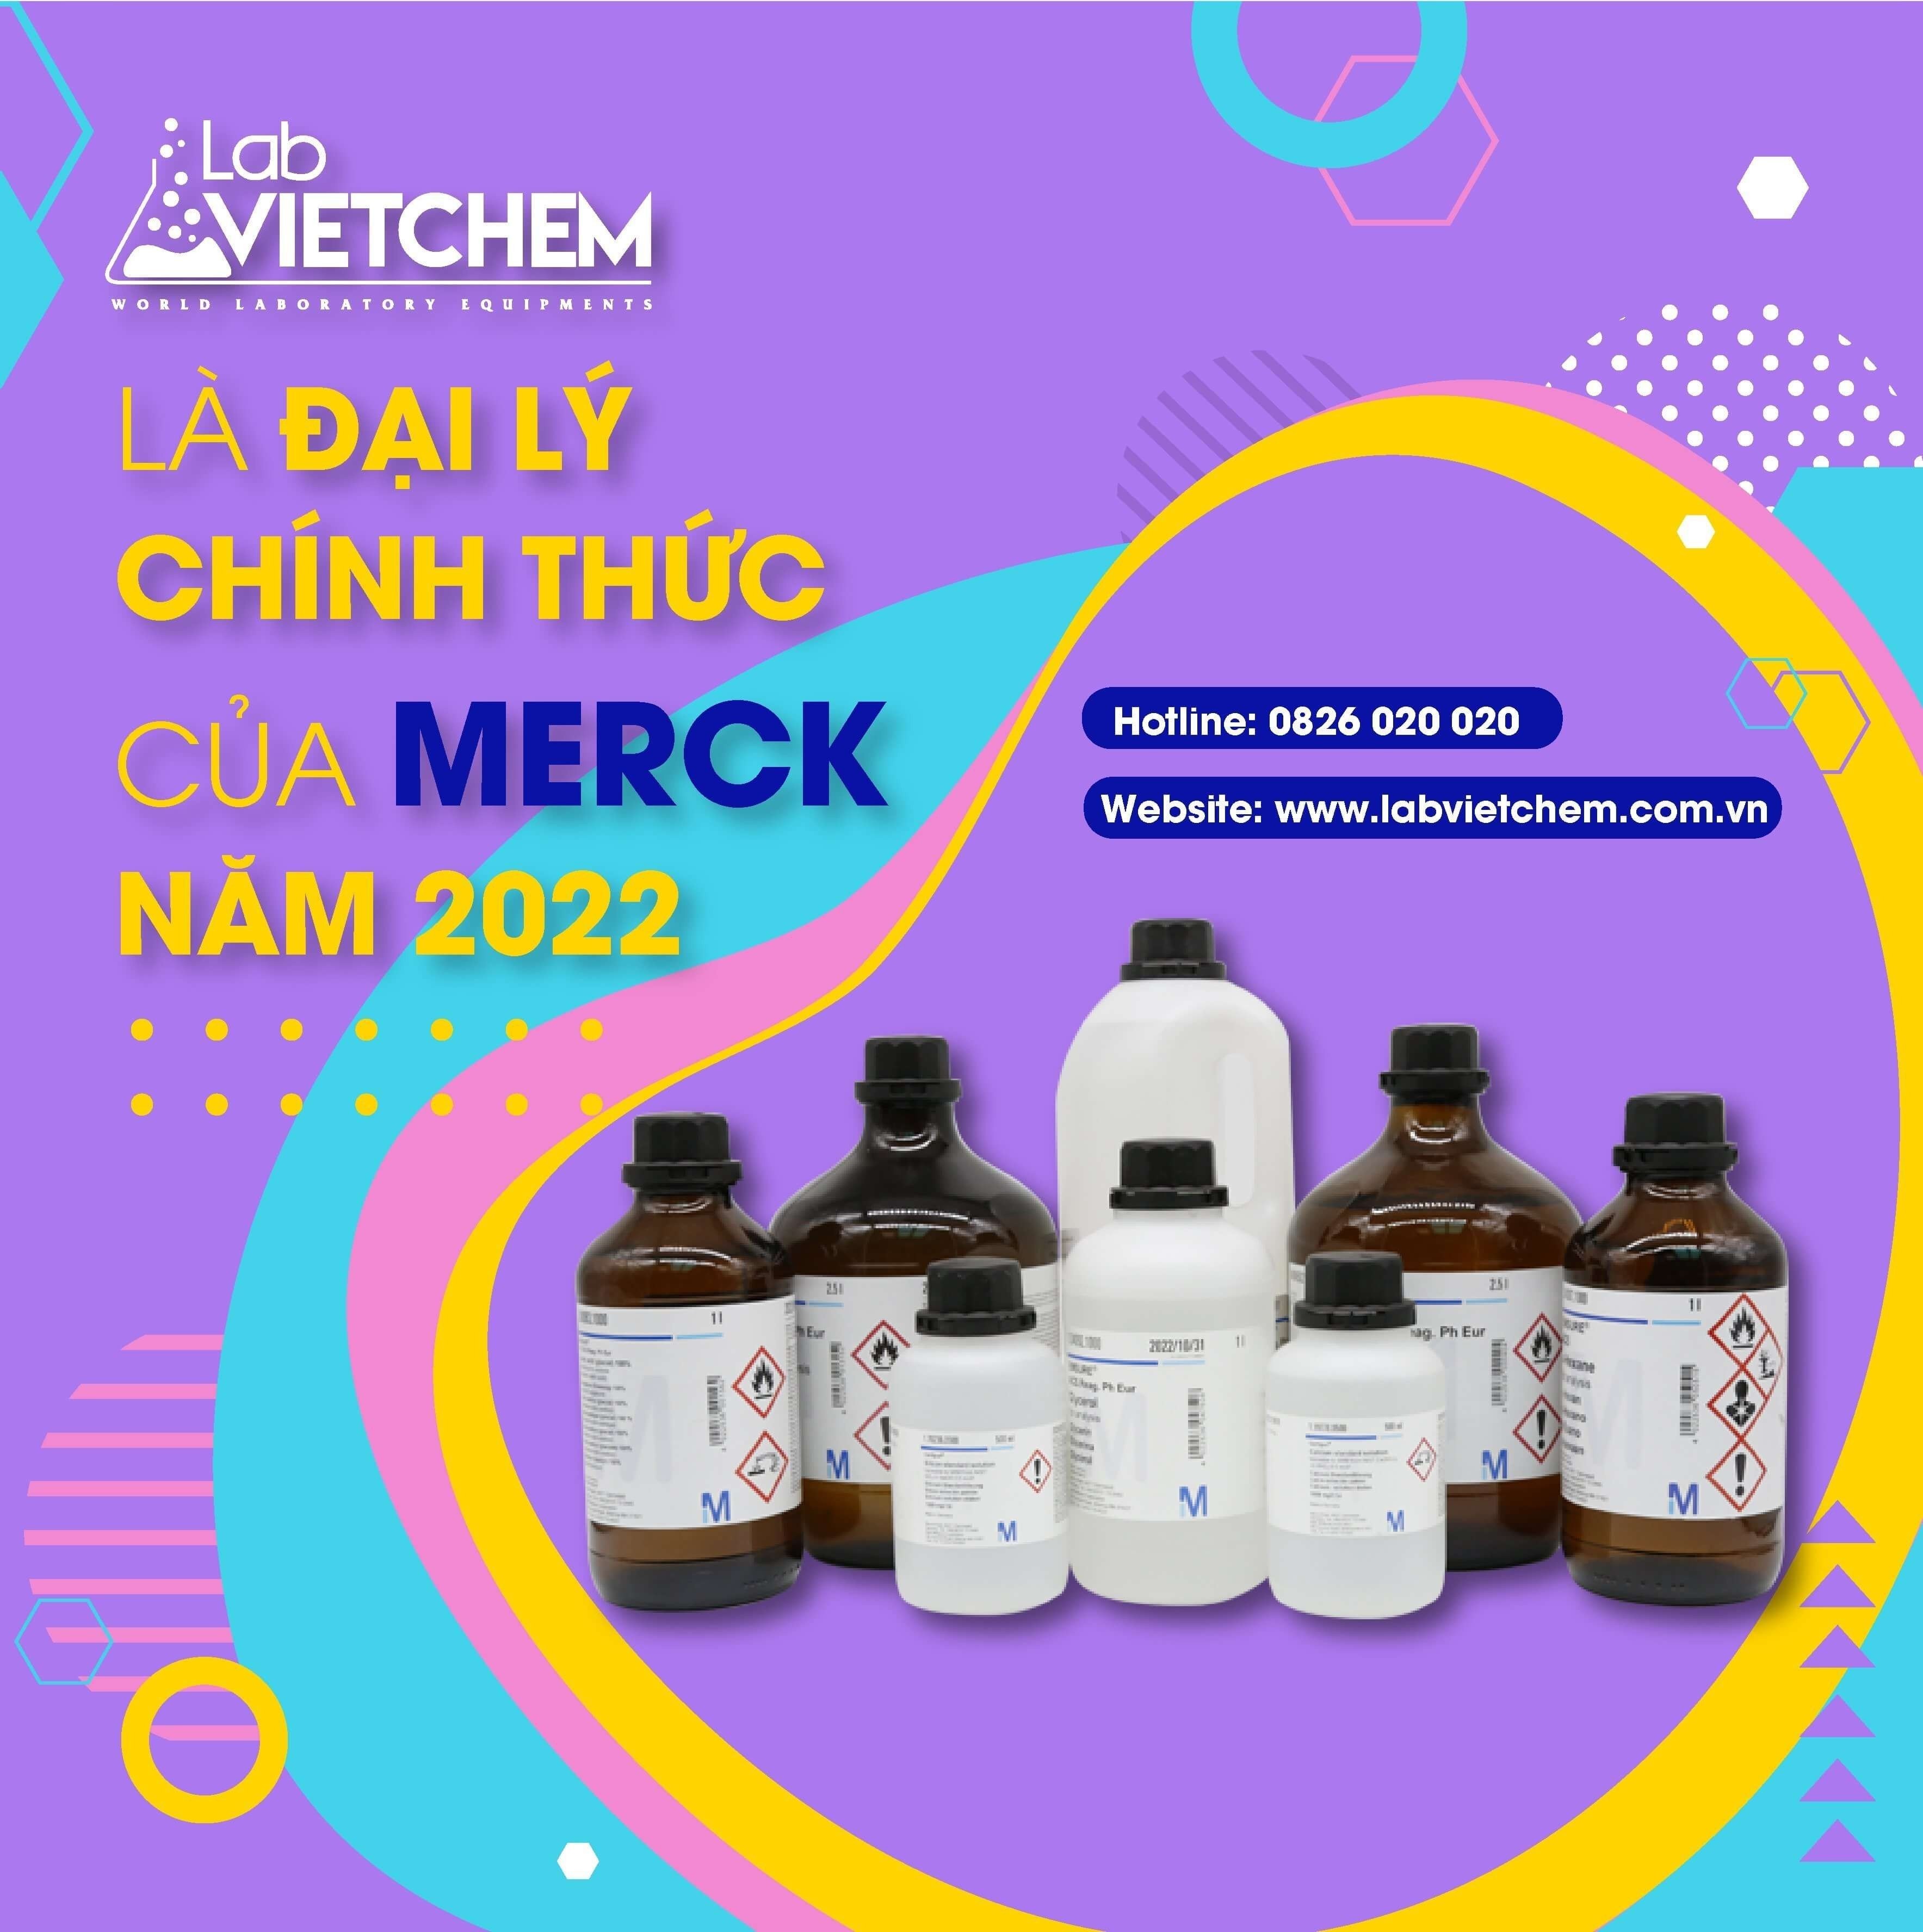 LabVIETCHEM là đại lý chính thức phân phối các sản phẩm của Merck